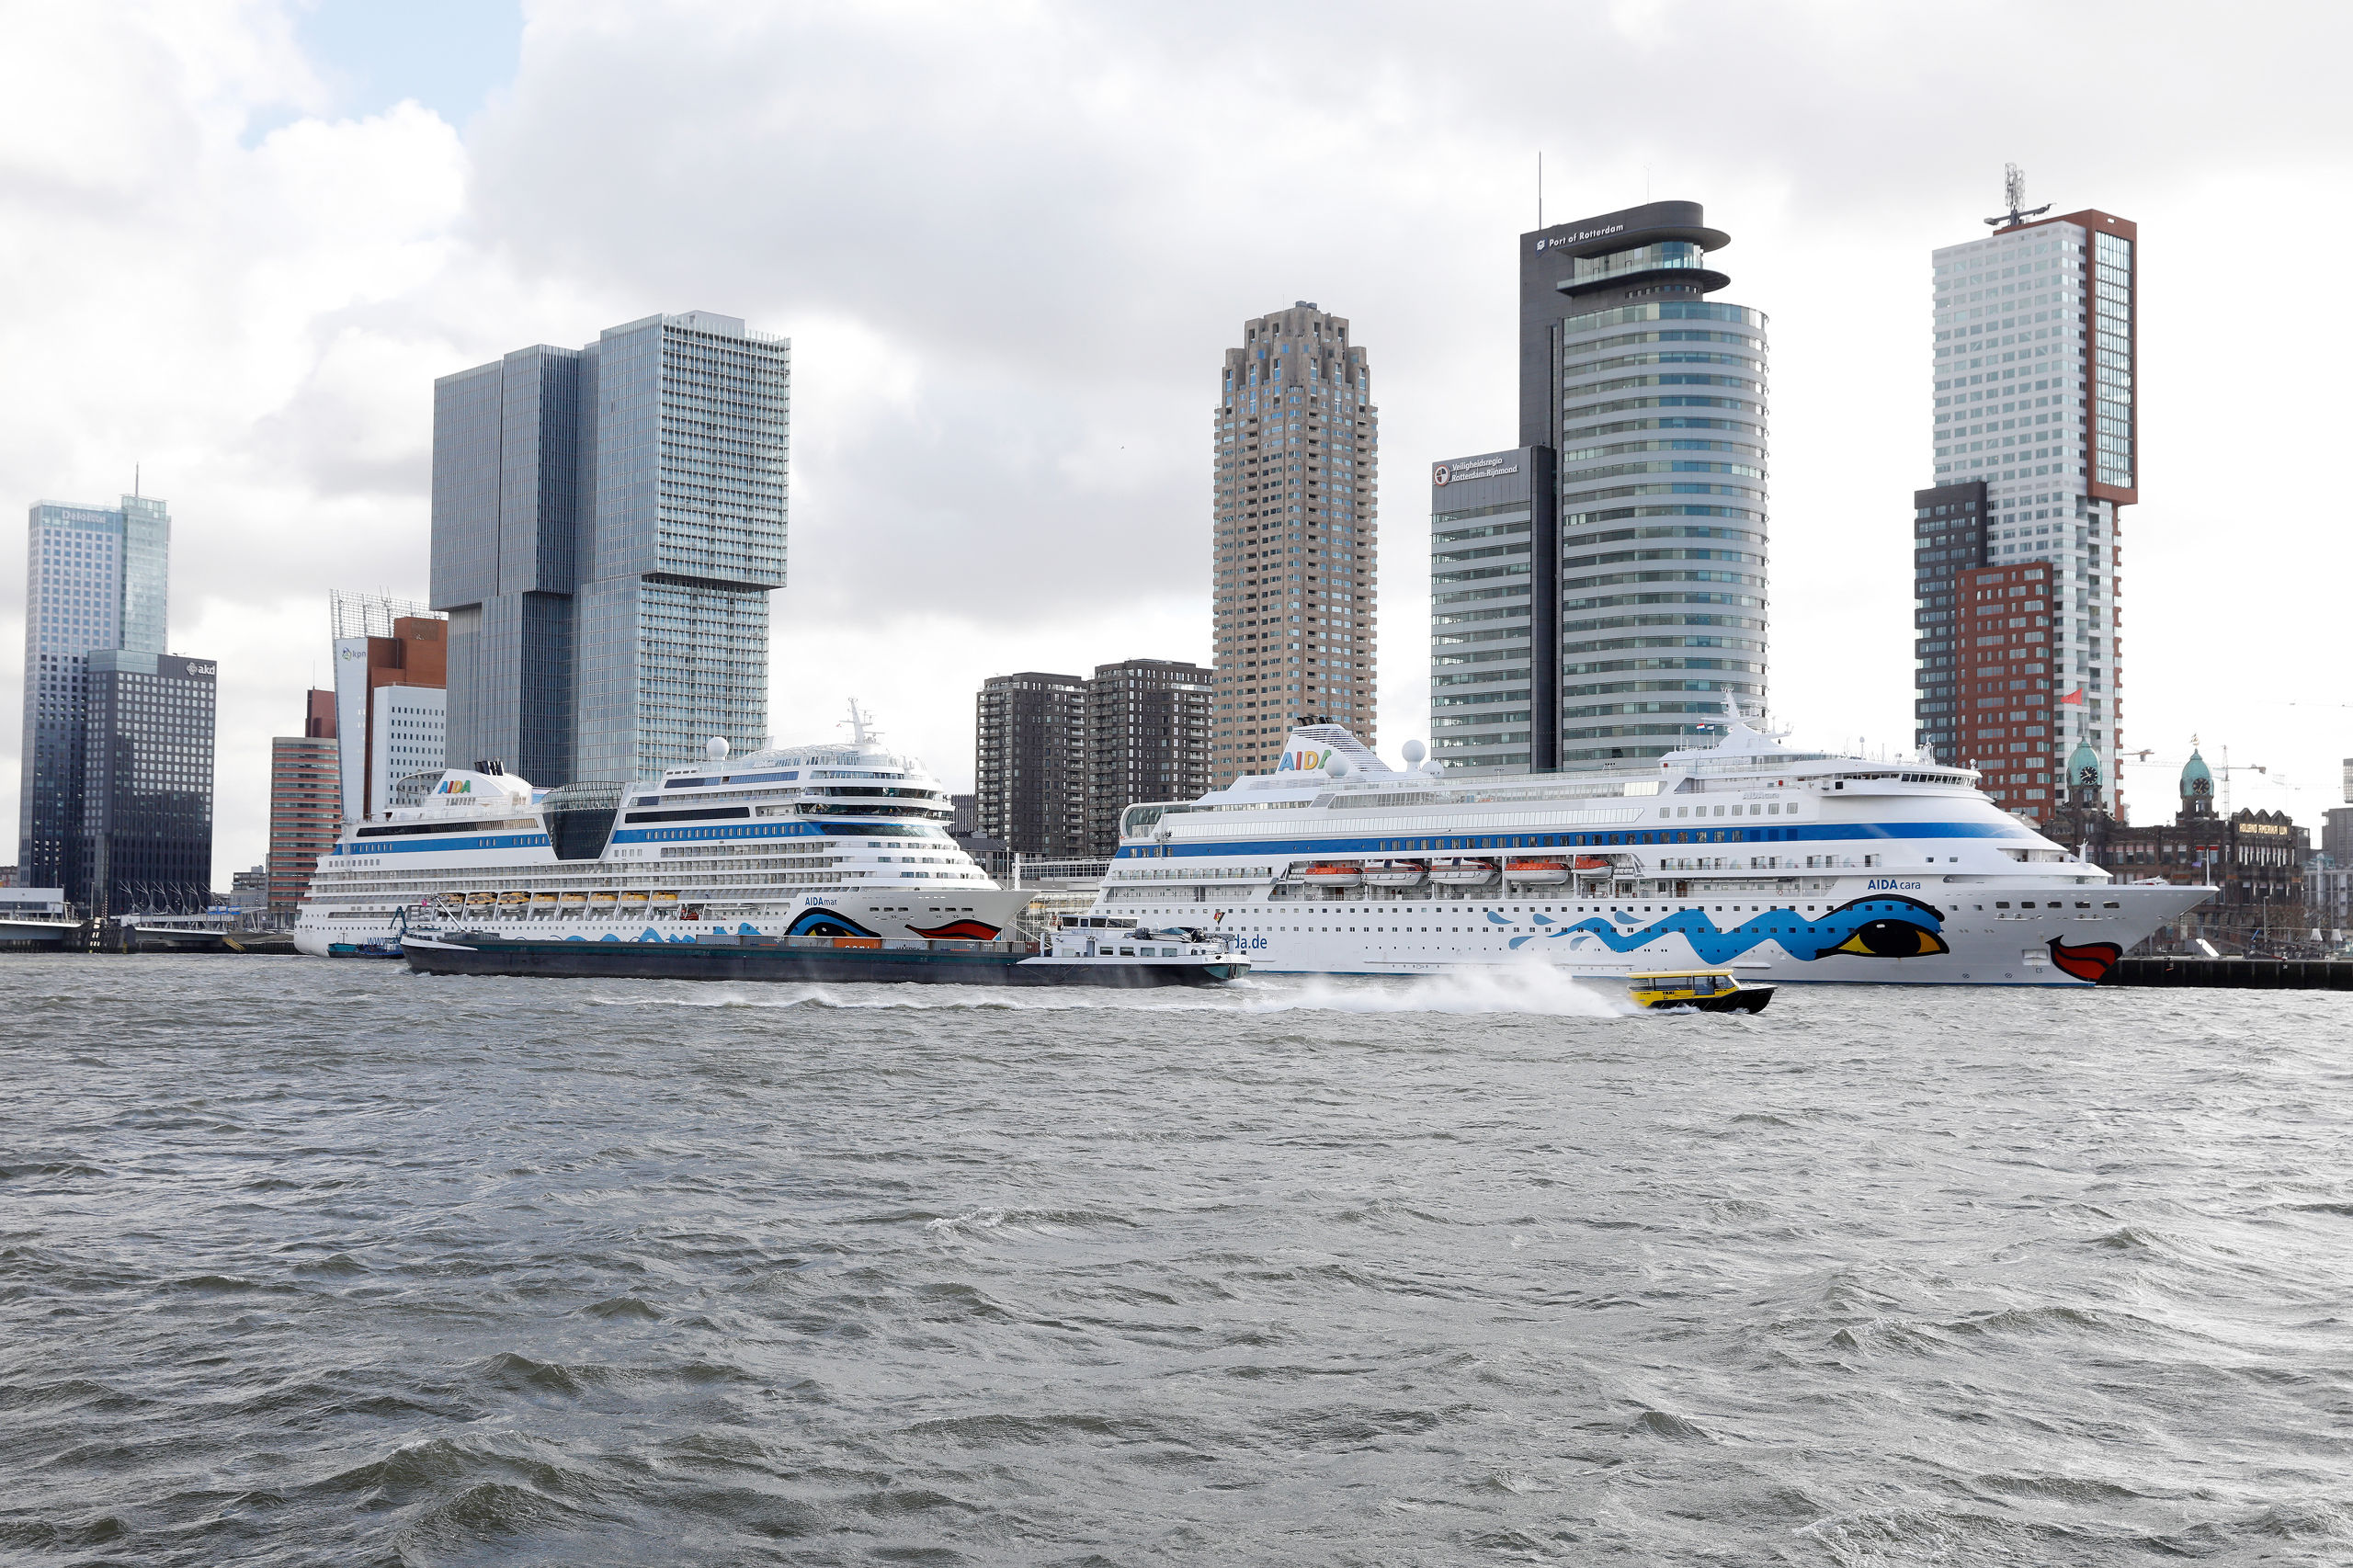 2019-03-07 11:47:01 ROTTERDAM - Cruiseschepen van AIDA liggen aangemeerd bij Cruiseport Rotterdam. De schepen komen aan op de opening van het cruiseseizoen, waarin voor het eerst meer dan honderd schepen zullen worden ontvangen. ANP BAS CZERWINSKI